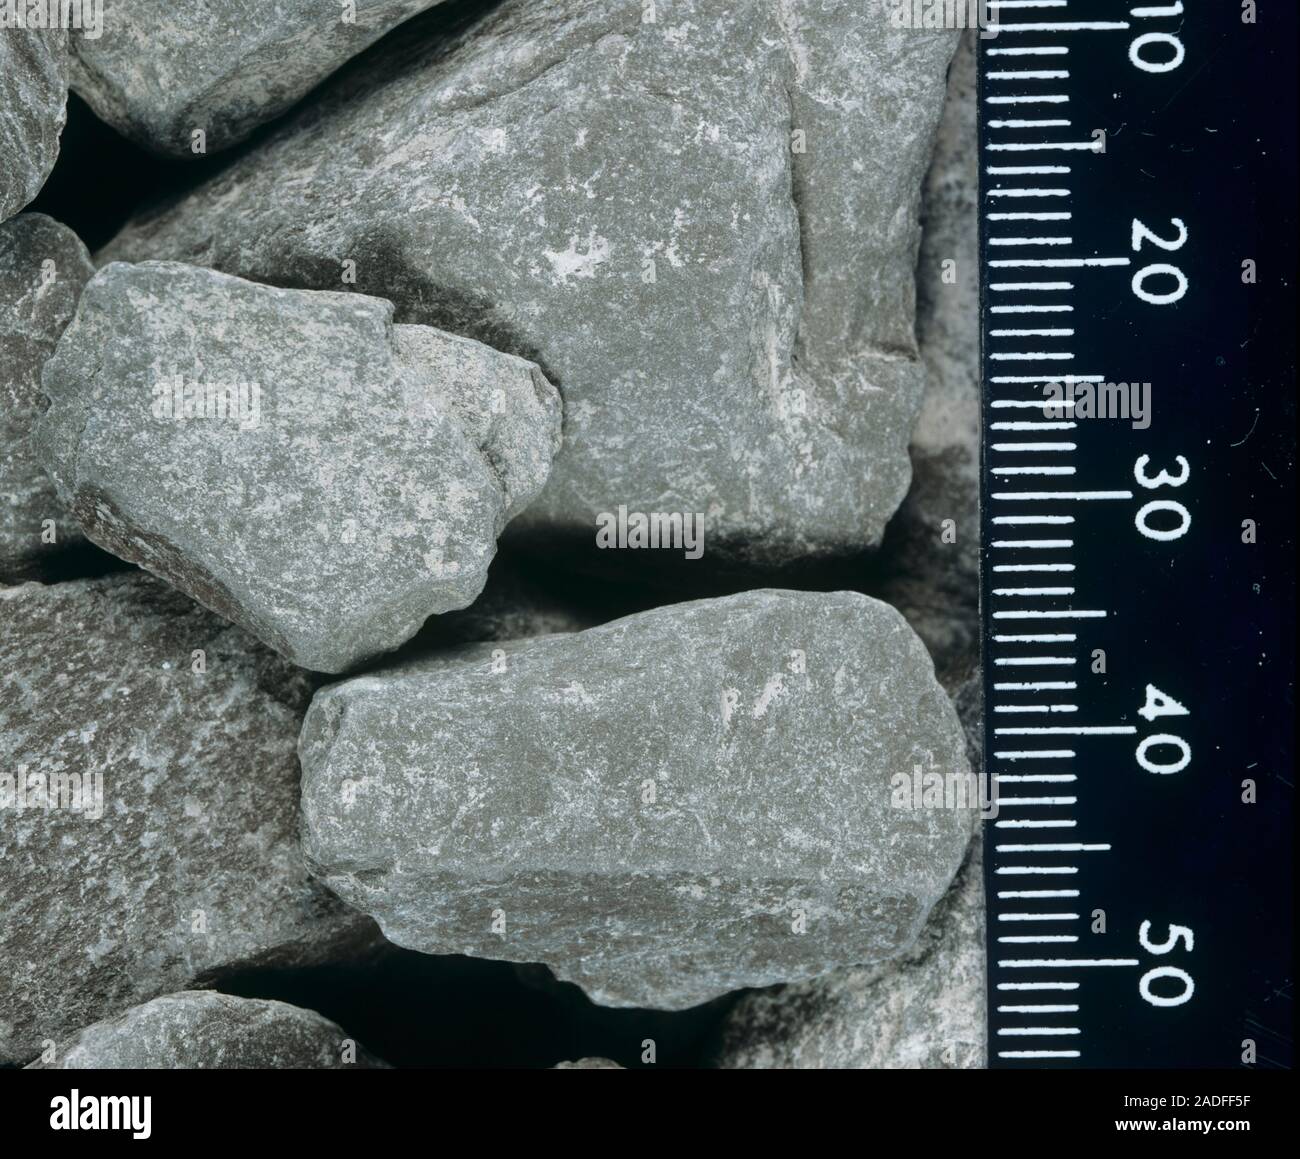 Pizarra de piedra con una regla (a la derecha) indicando la escala en  milímetros. Estas grandes piedras lisas están formados por rocas  sedimentarias, como la piedra caliza o sa Fotografía de stock -